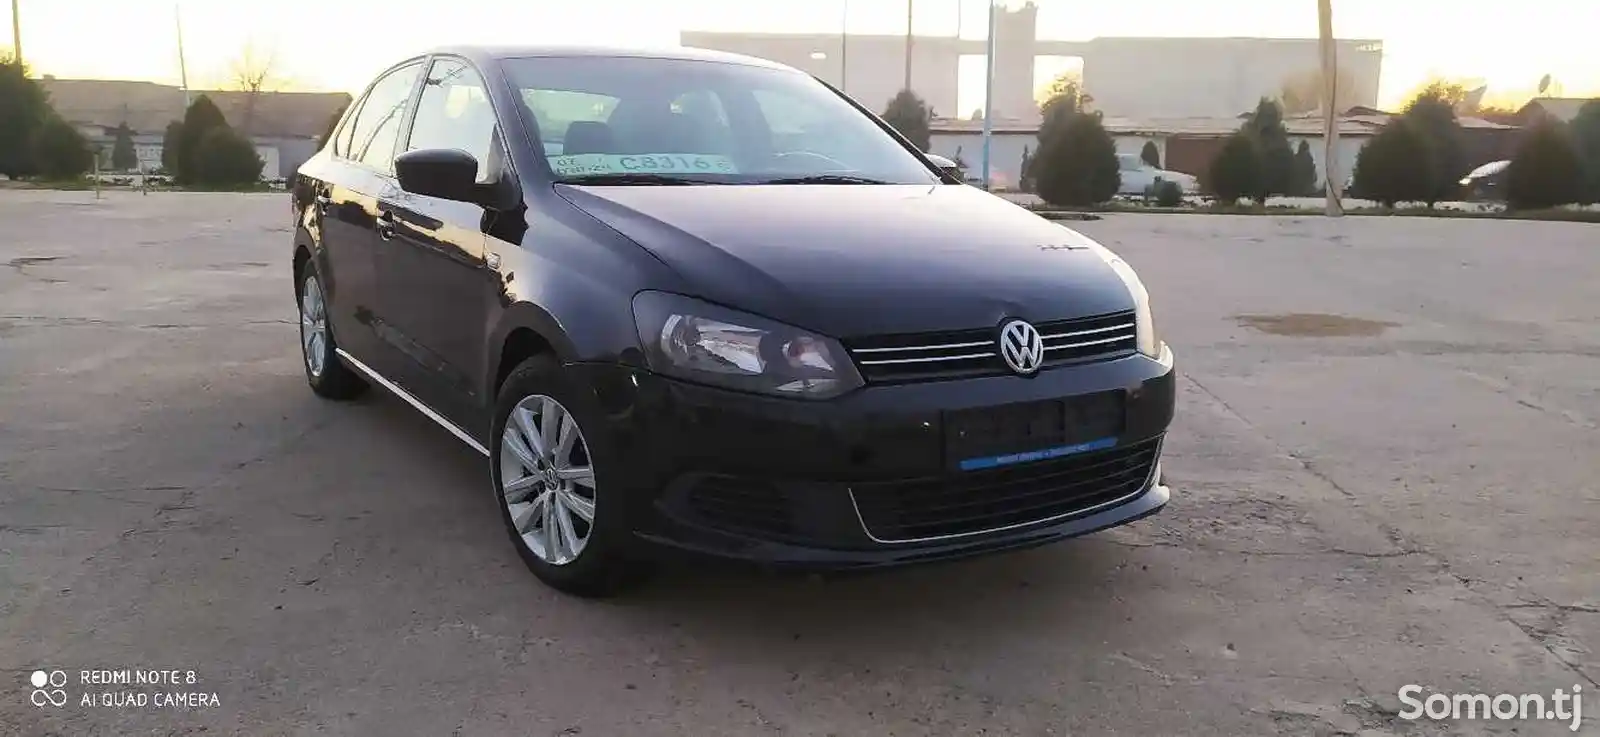 Volkswagen Polo, 2013-2